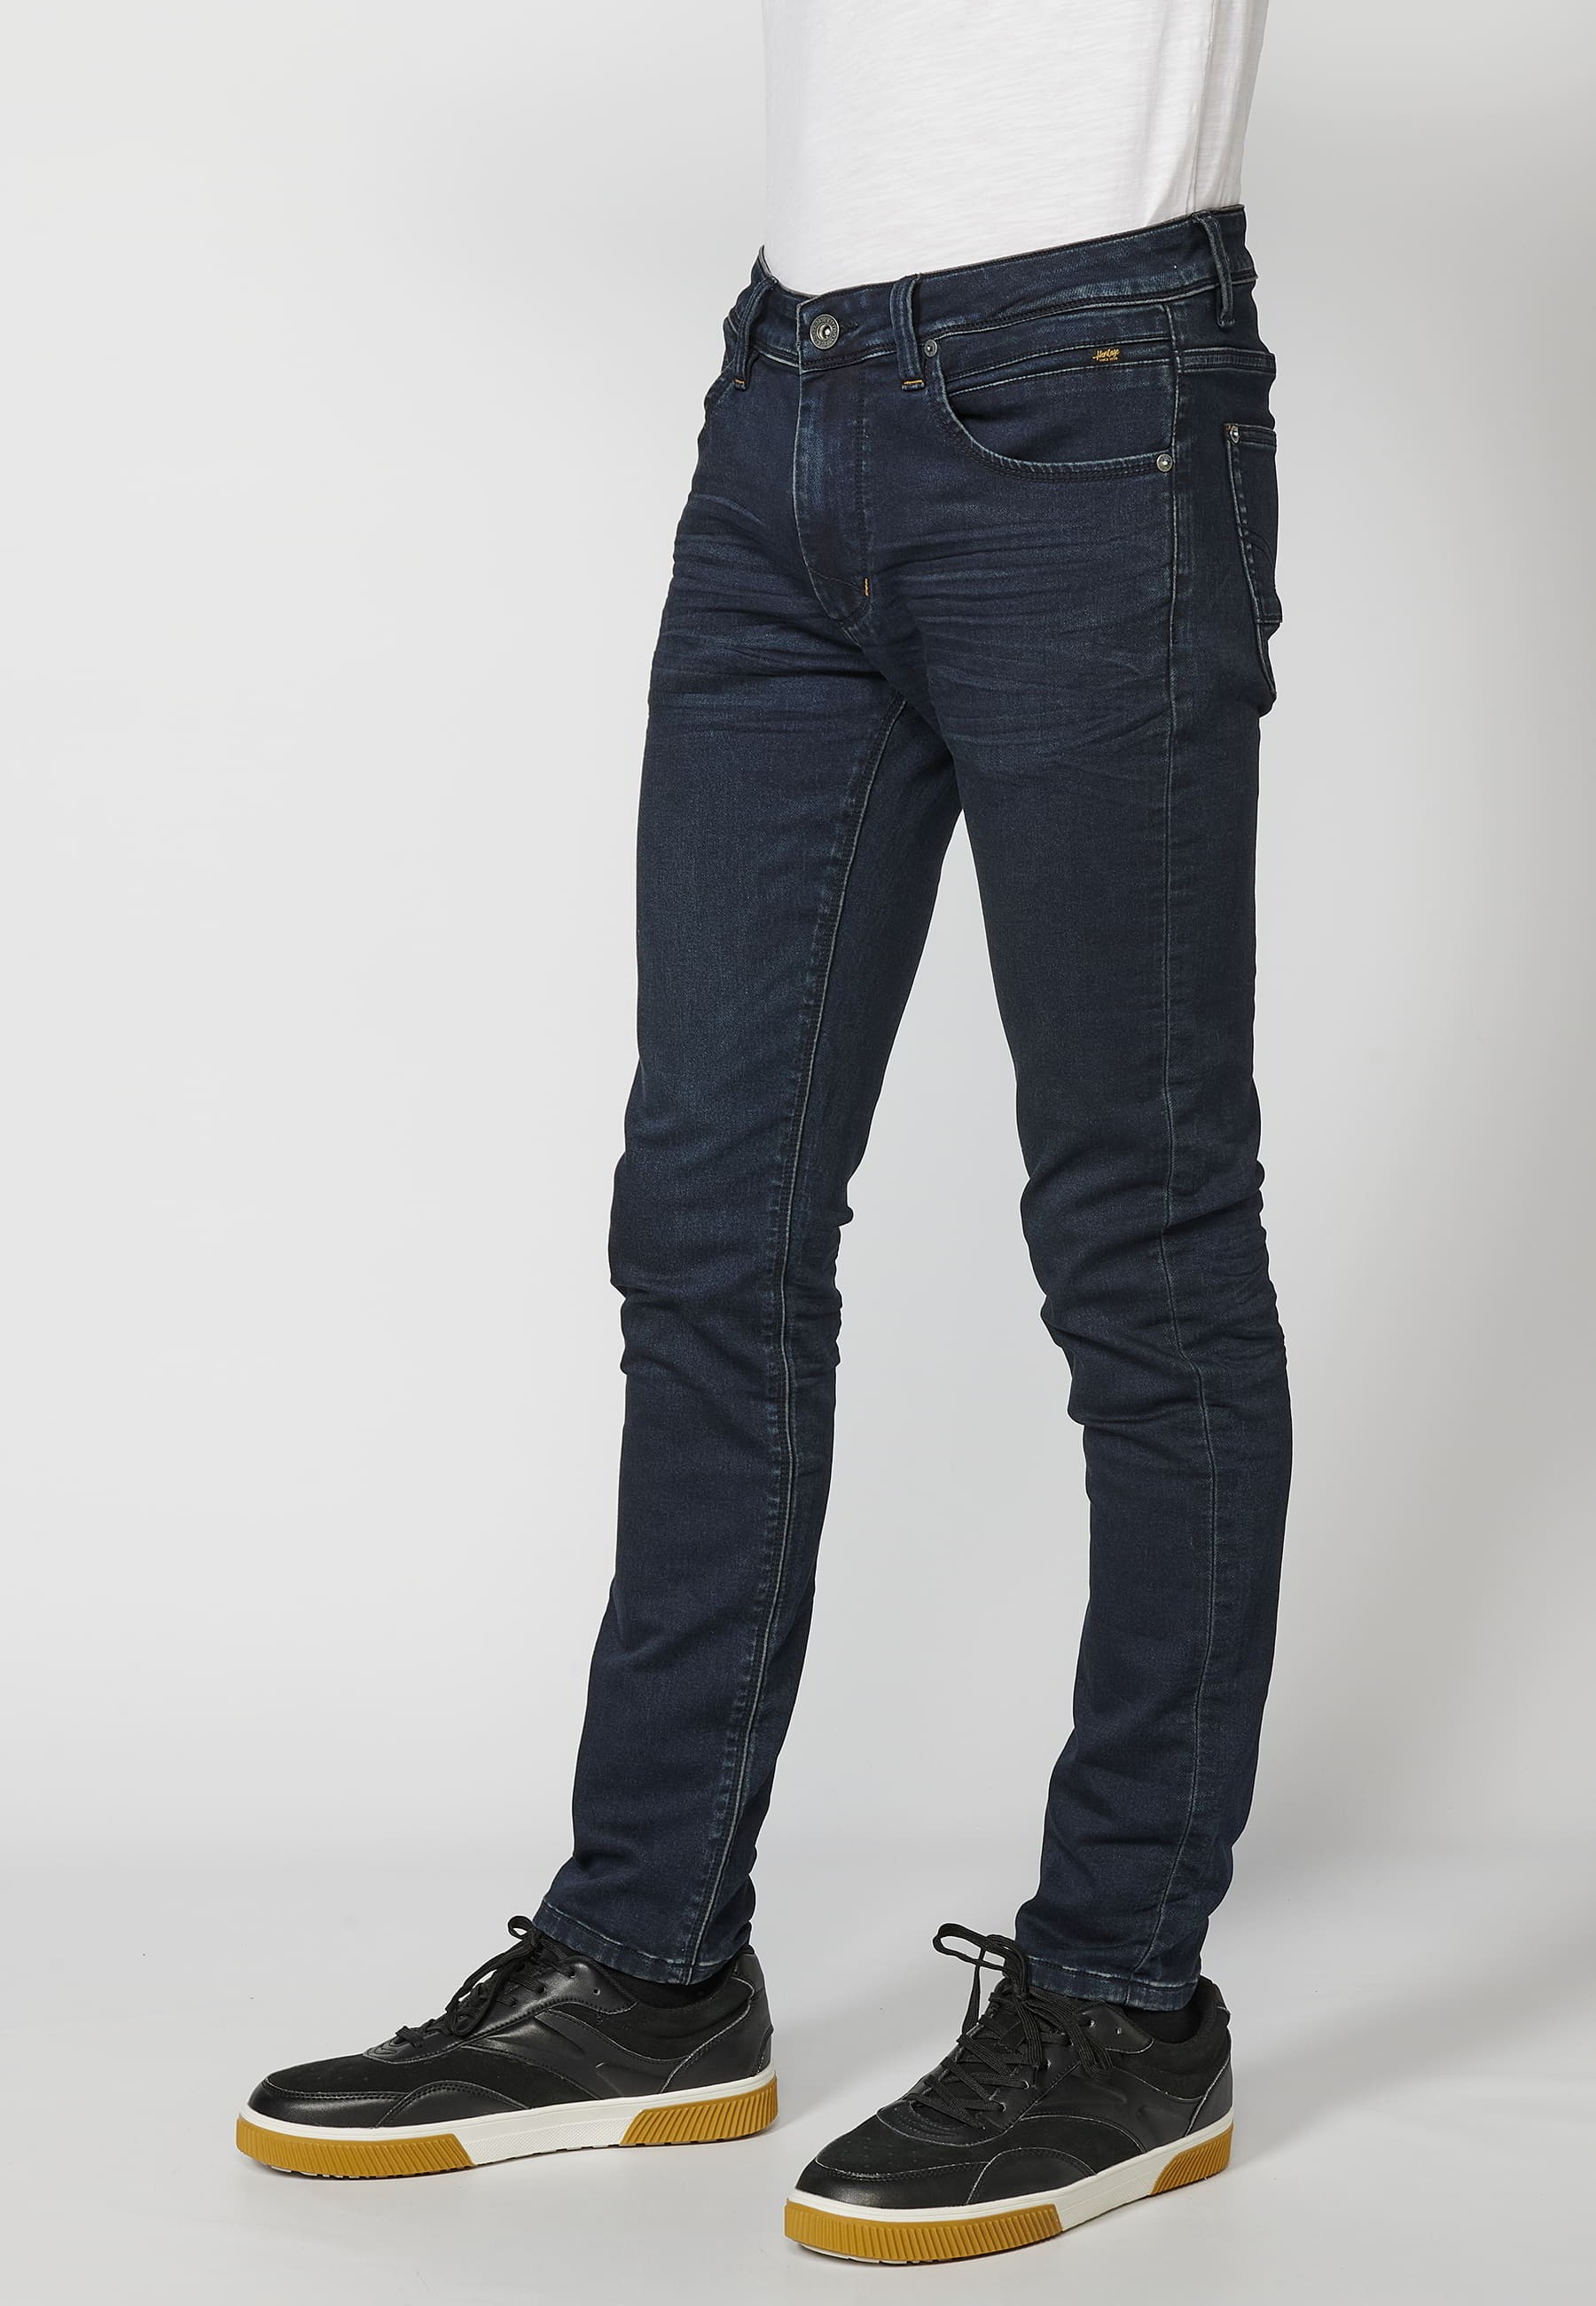 Pantalon Jean long coupe slim, couleur Bleu Foncé pour Homme 1